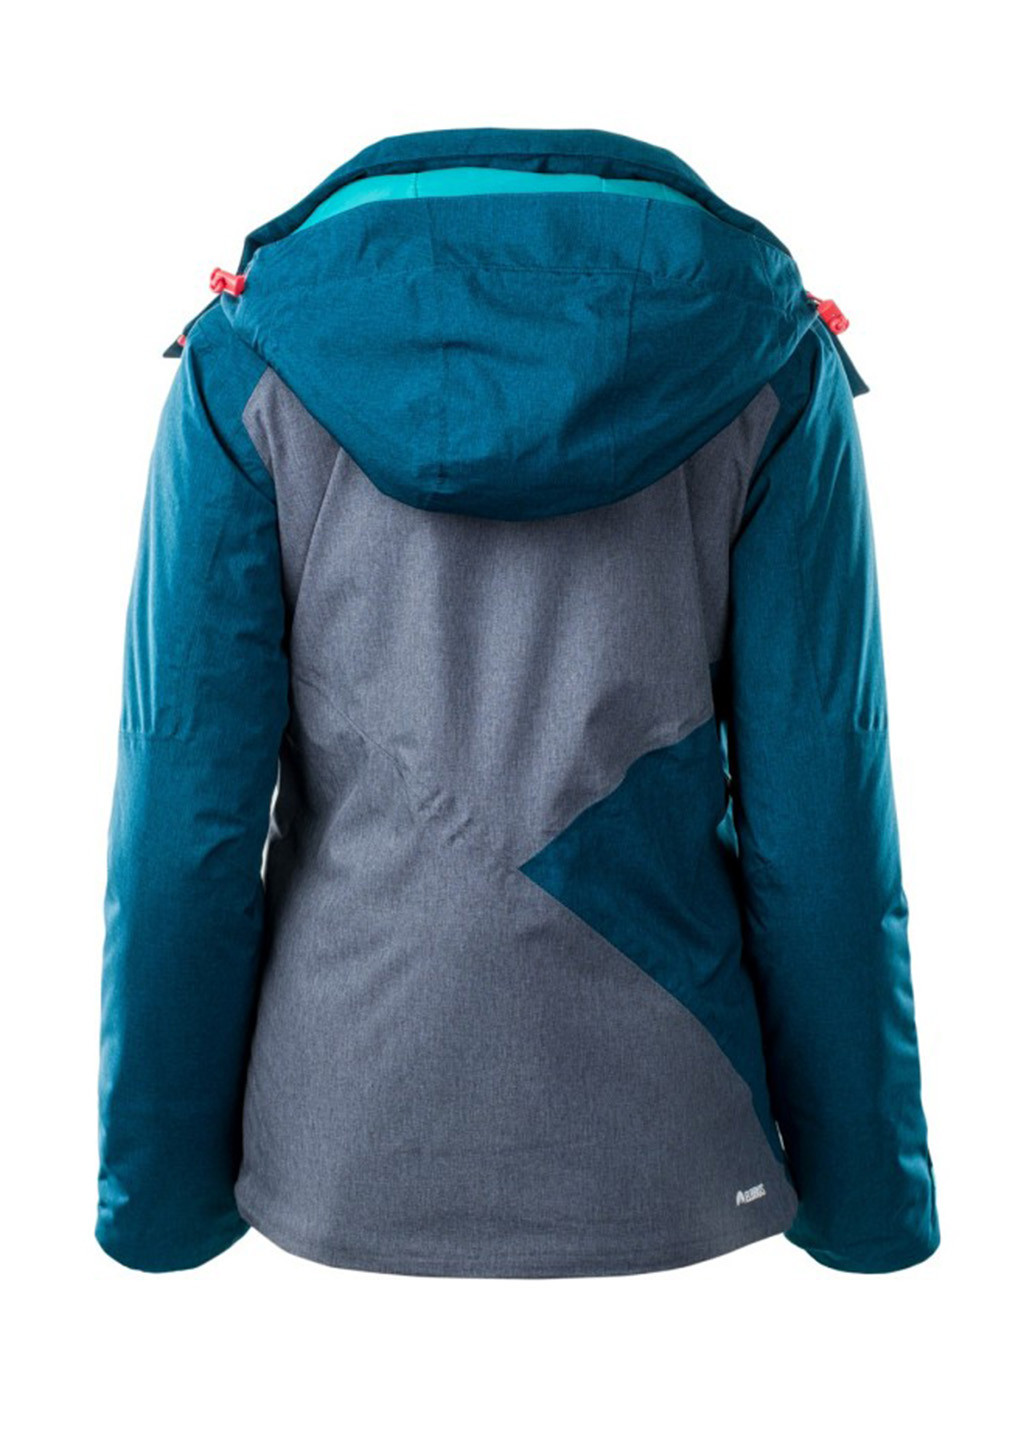 Темно-синяя зимняя куртка лыжная Elbrus